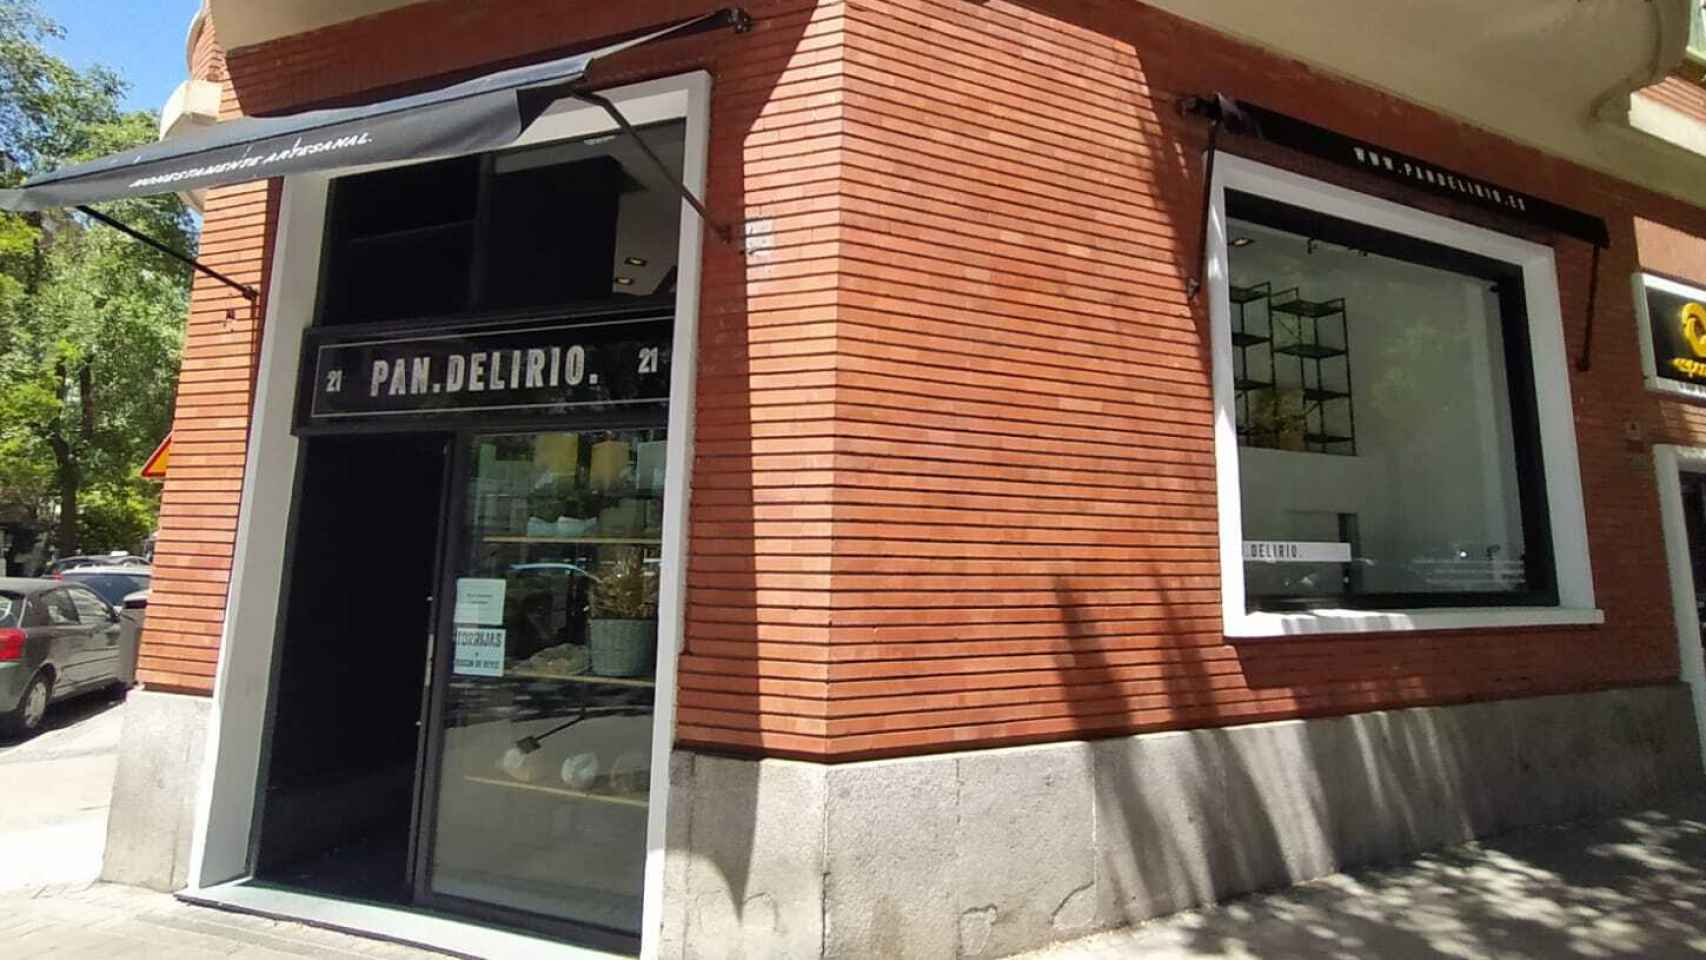 El obrador Pan.Delirio, que está en el número 21 de la calle de Juan Bravo (Madrid).